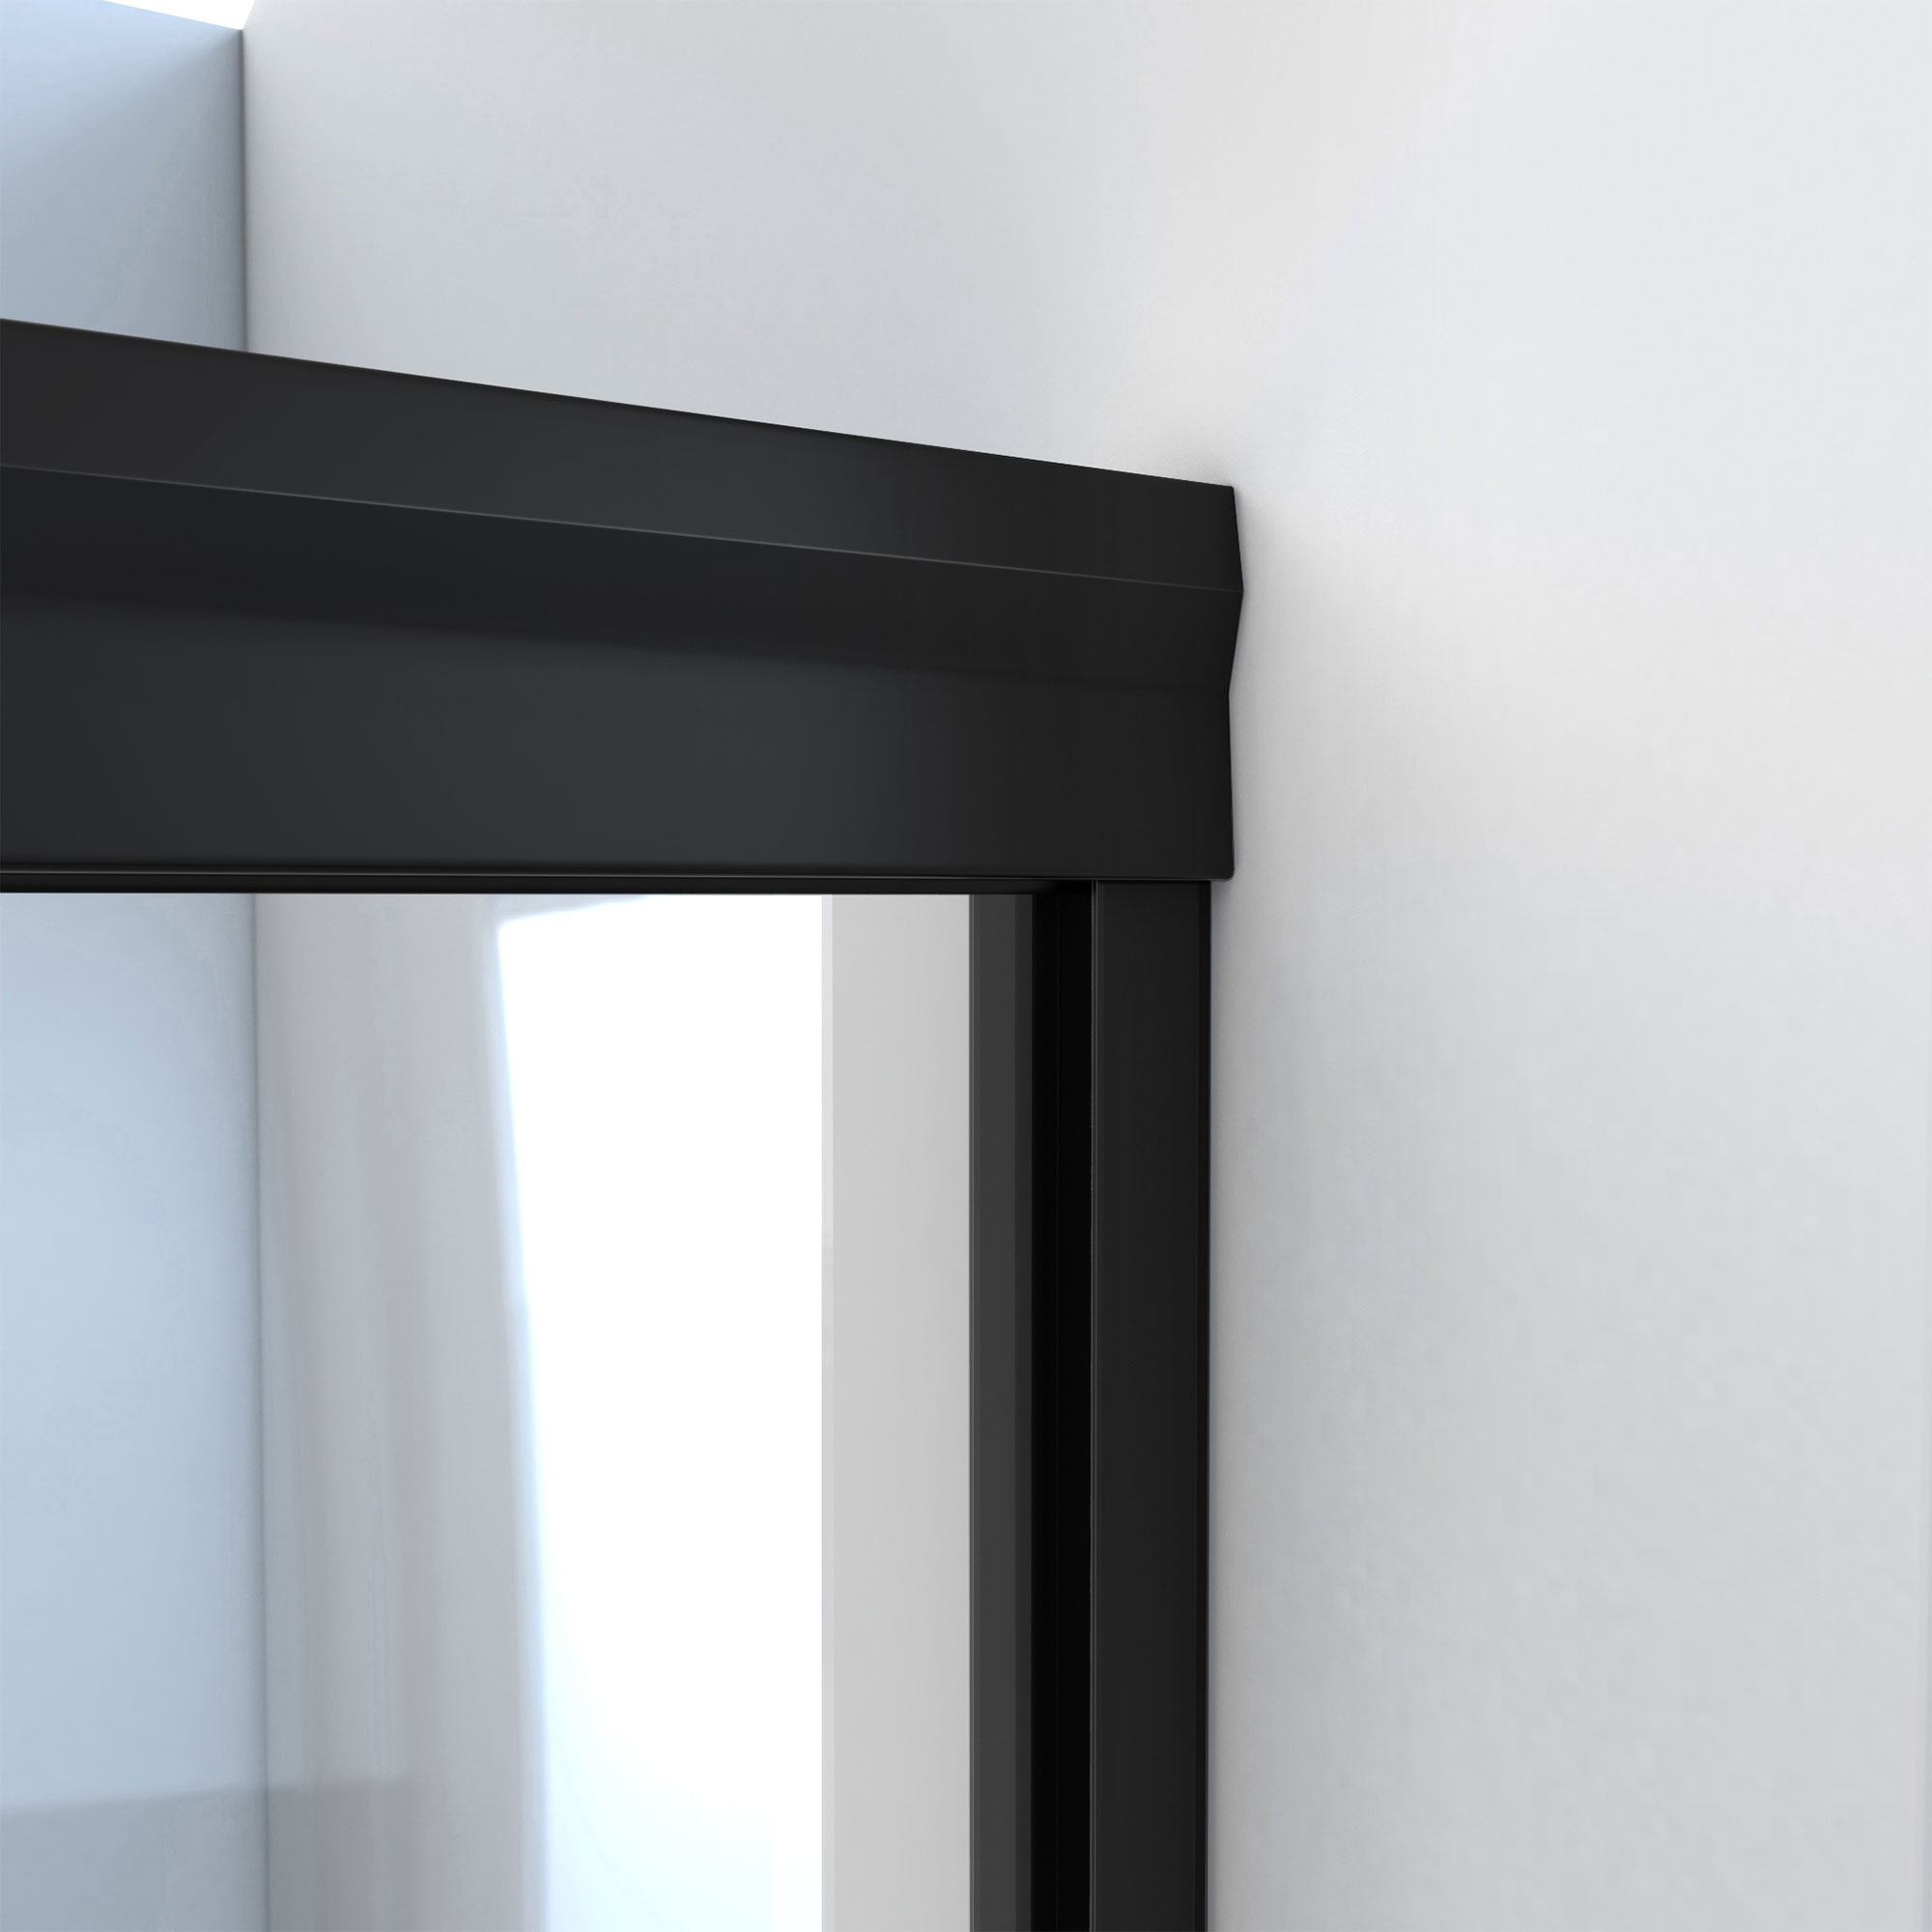 DreamLine Alliance Pro BG 56-60 in. W x 70 3/8 in. H Semi-Frameless Sliding Shower Door in Satin Black and Clear Glass